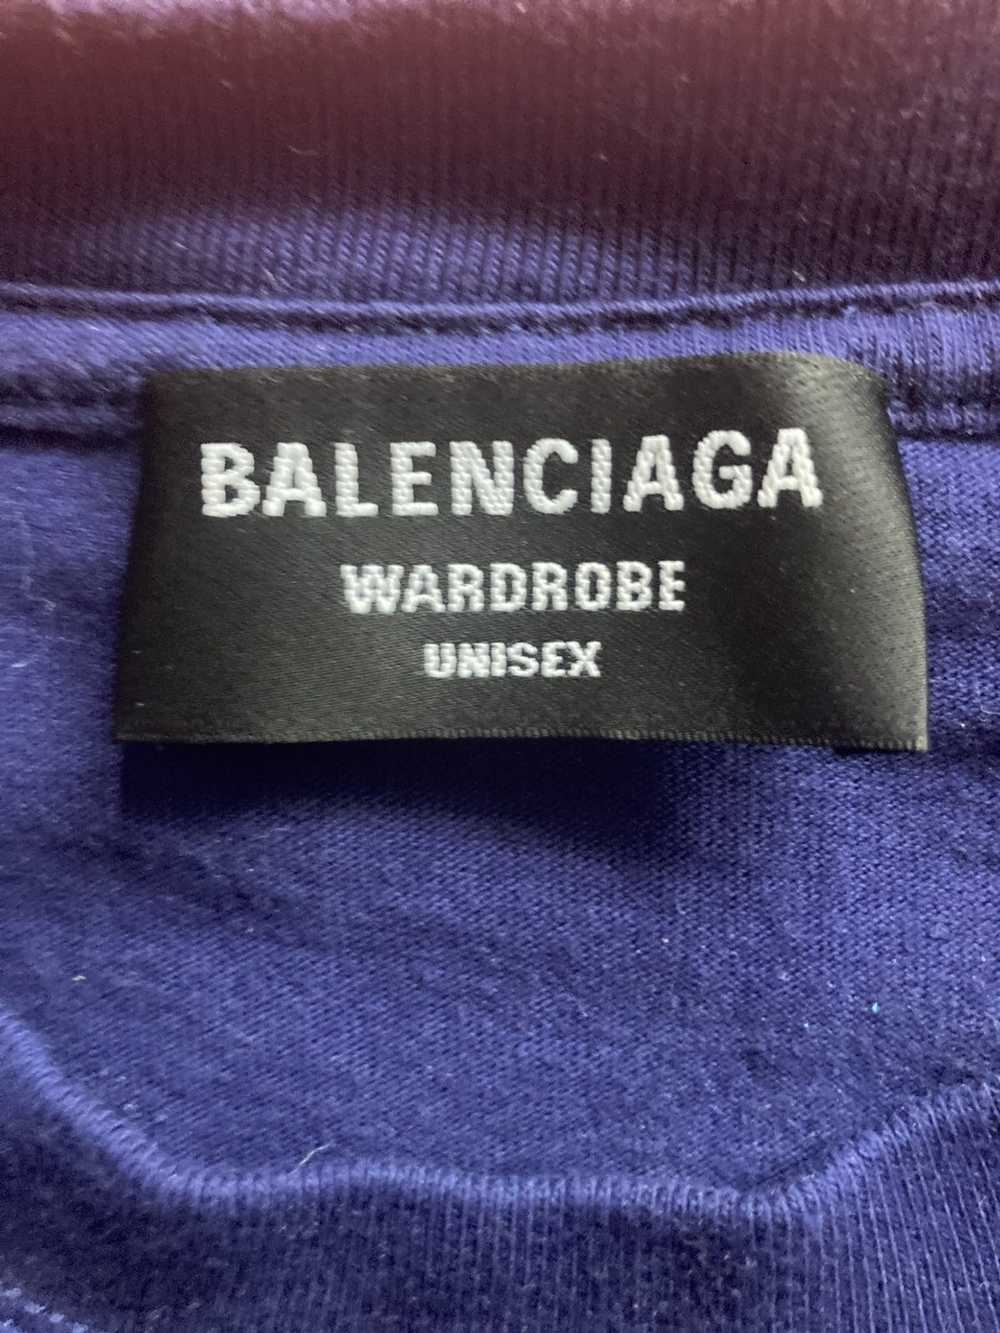 Balenciaga Balenciaga small logo oversized T-shirt - image 7